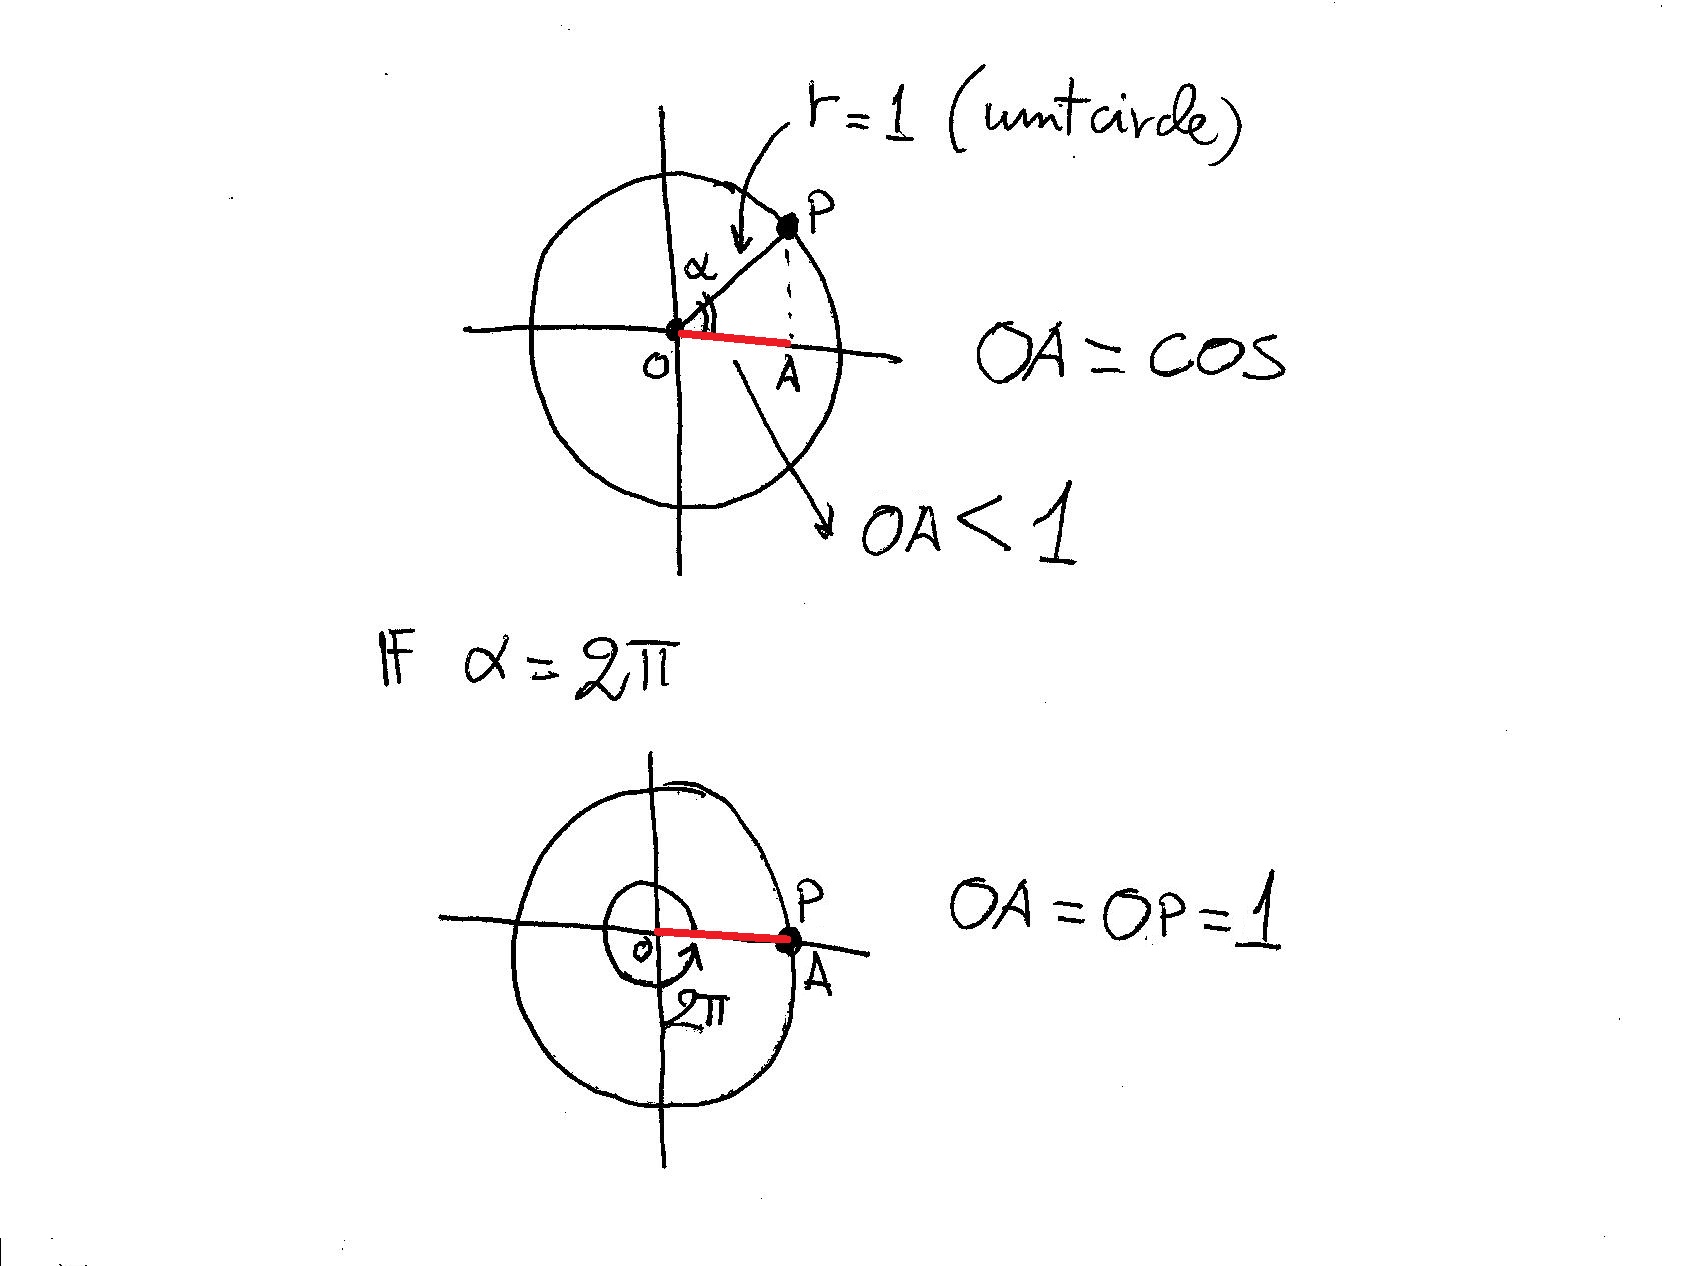 Π 2 2π. Cos (Pi:2 Pi). Cos x = b.